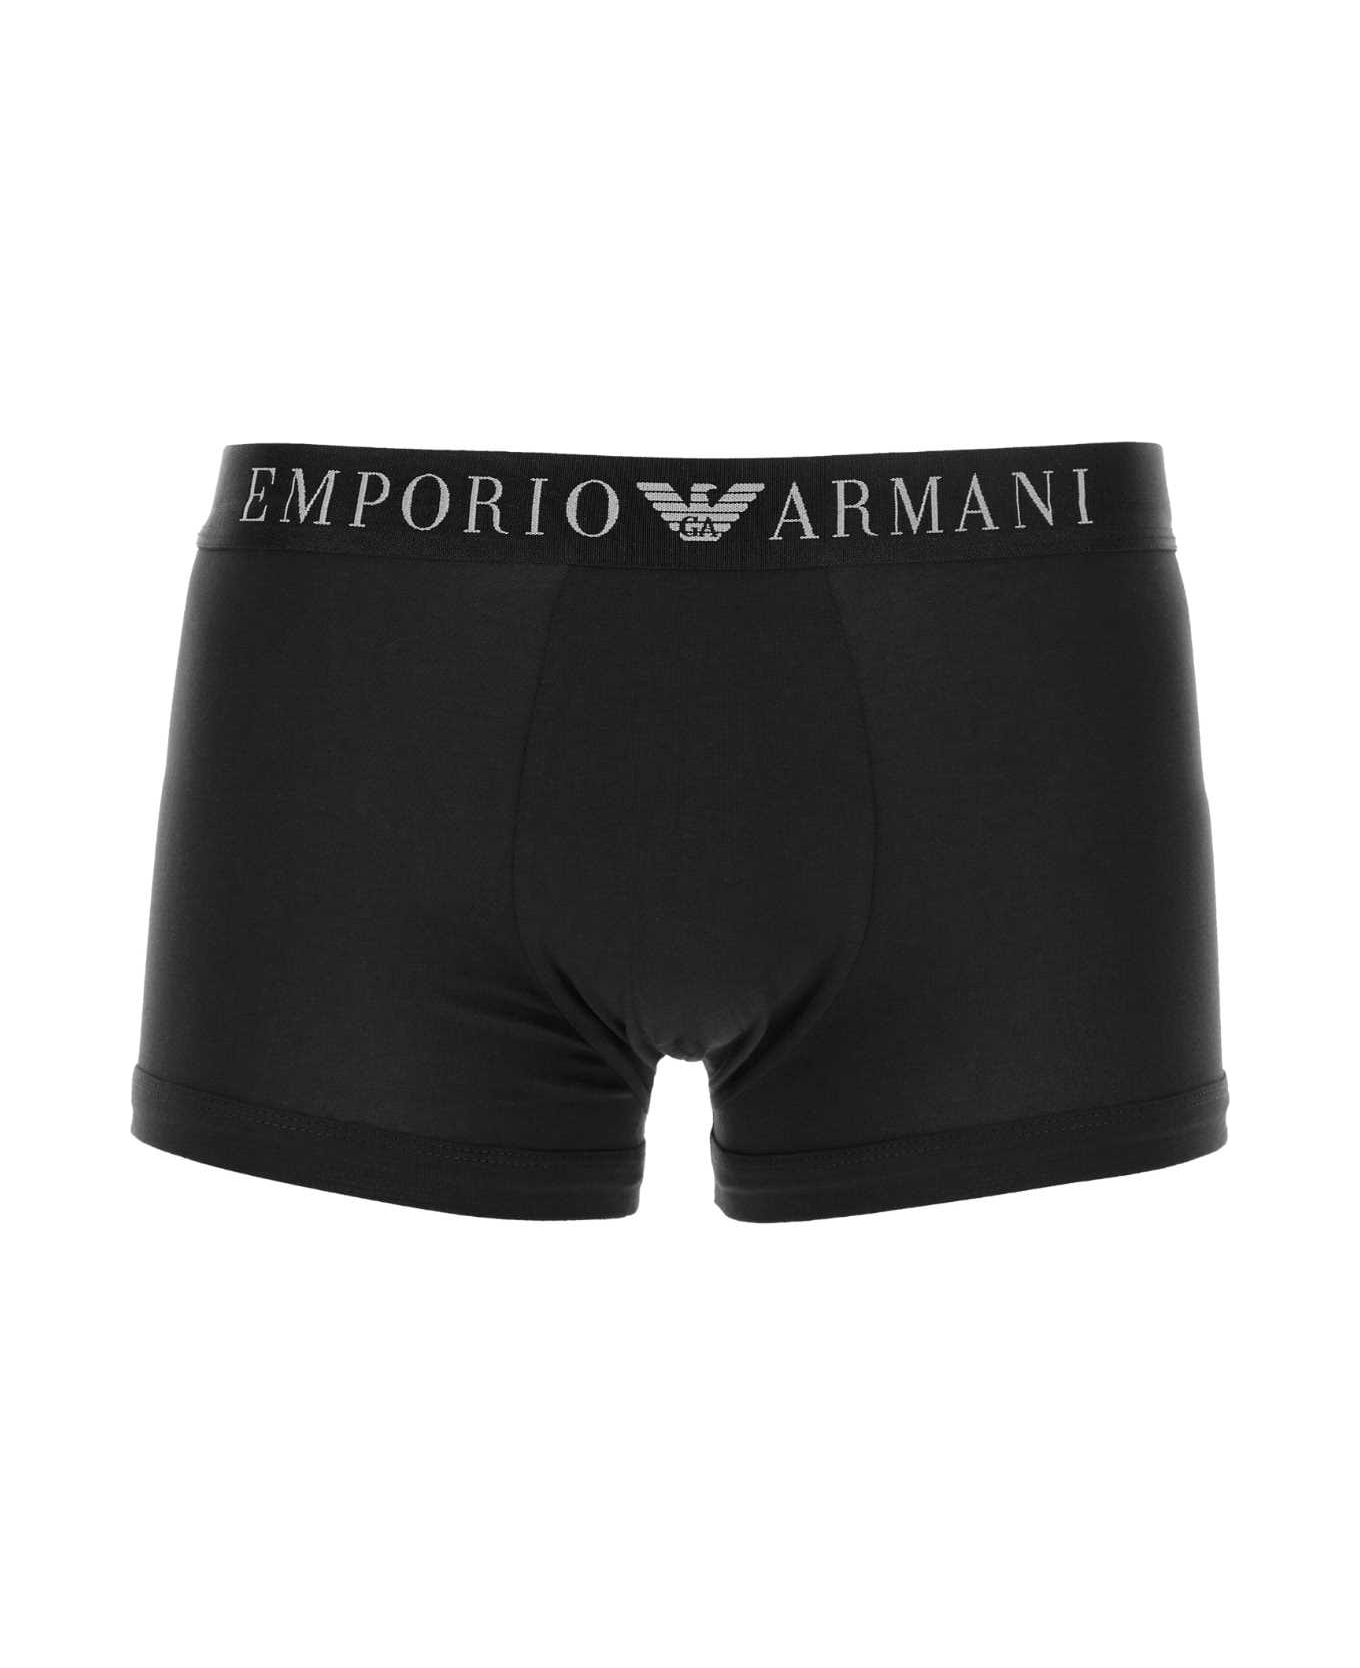 Emporio Armani Black Stretch Cotton Boxer - 00020 ショーツ